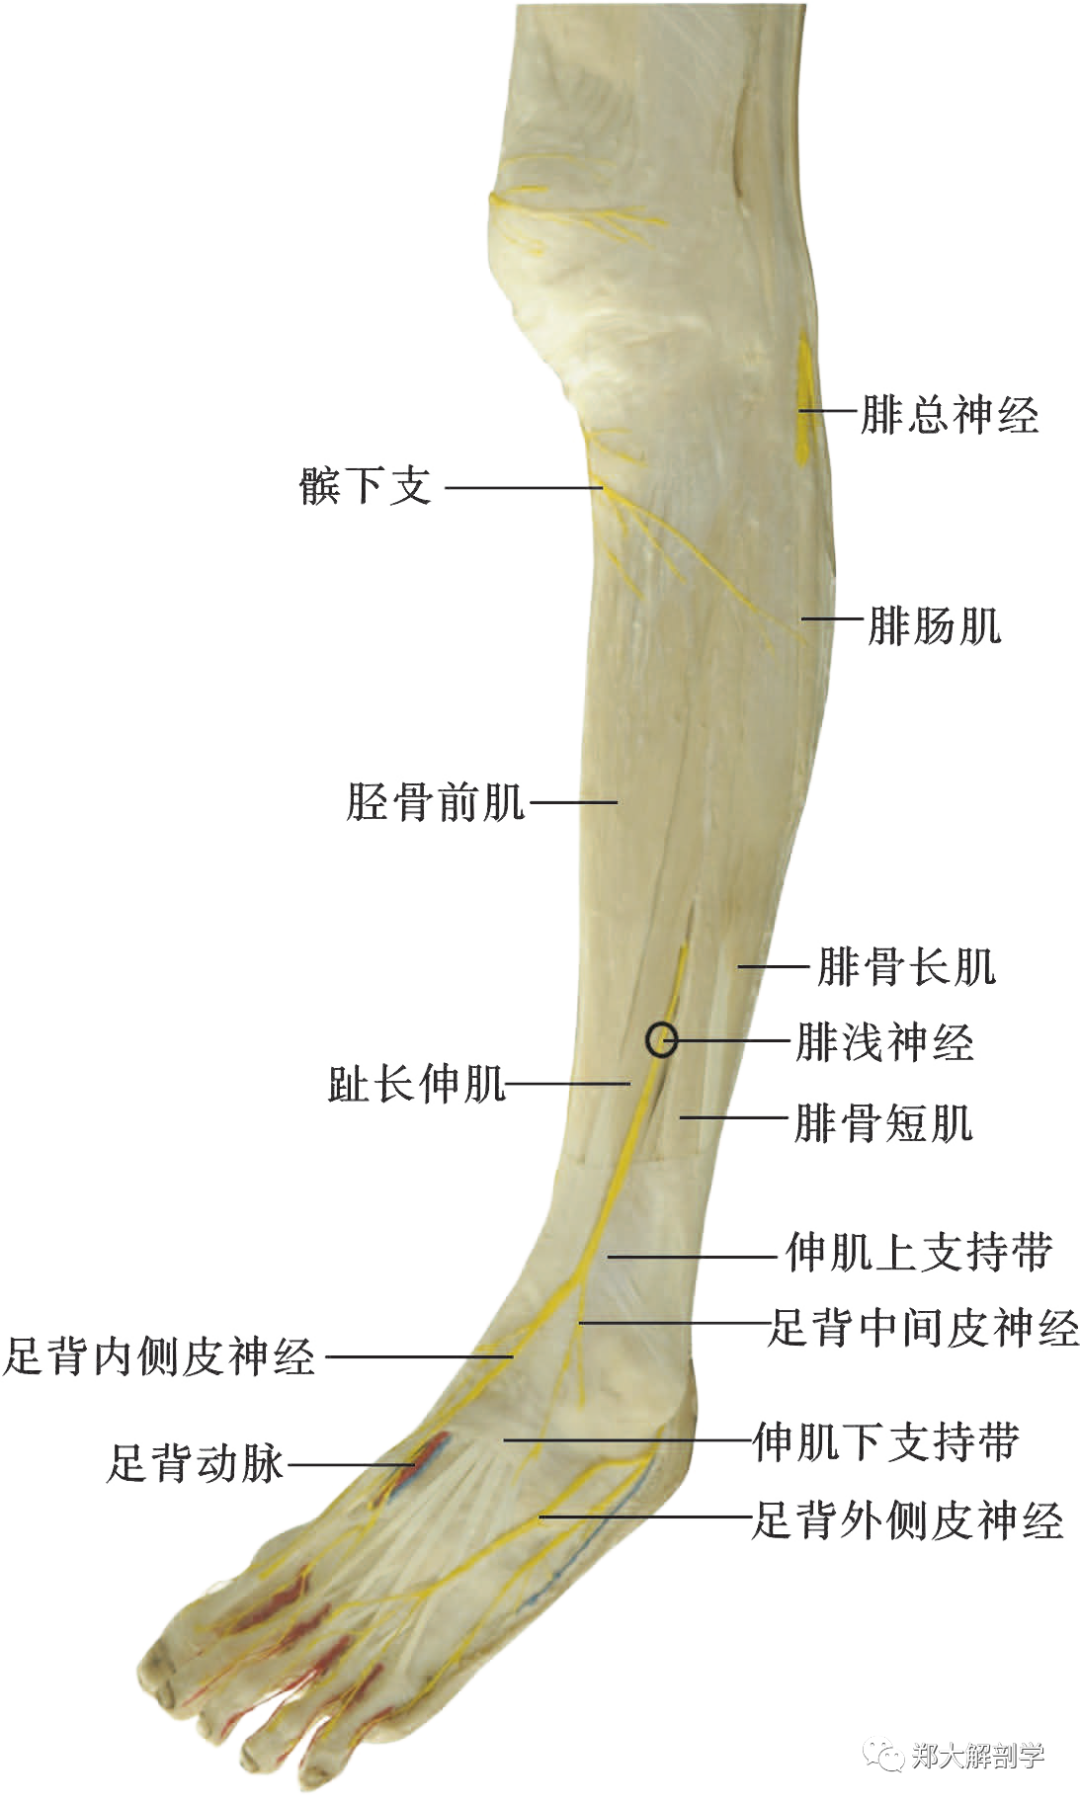 腓骨肌管:腓骨长肌上部及其周围筋膜和腓骨颈组成,治疗定点在腓骨长肌